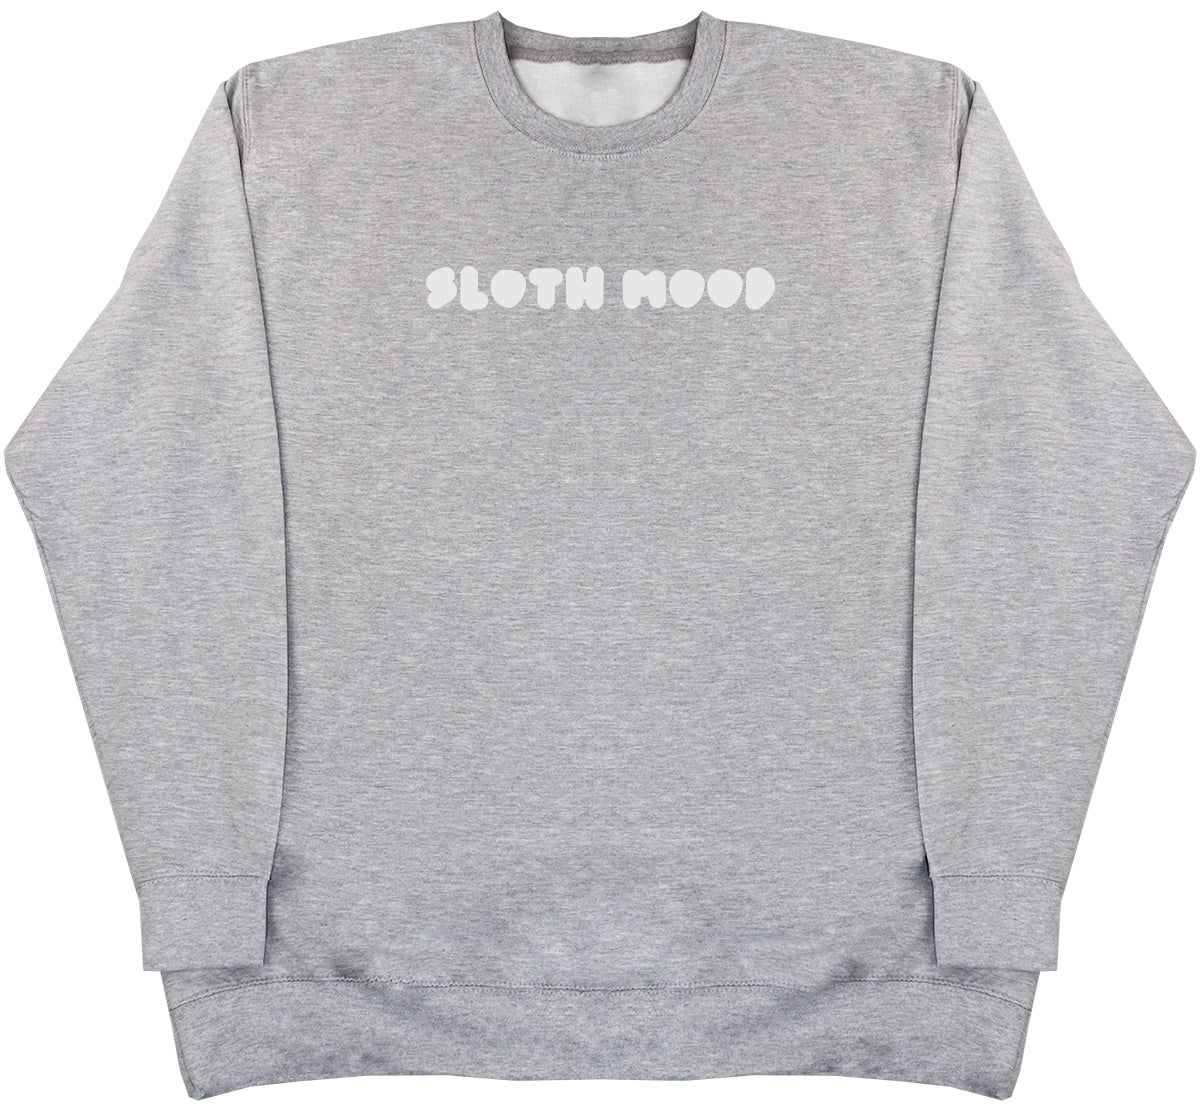 Sloth Mood - Huge Oversized Comfy Original Sweater